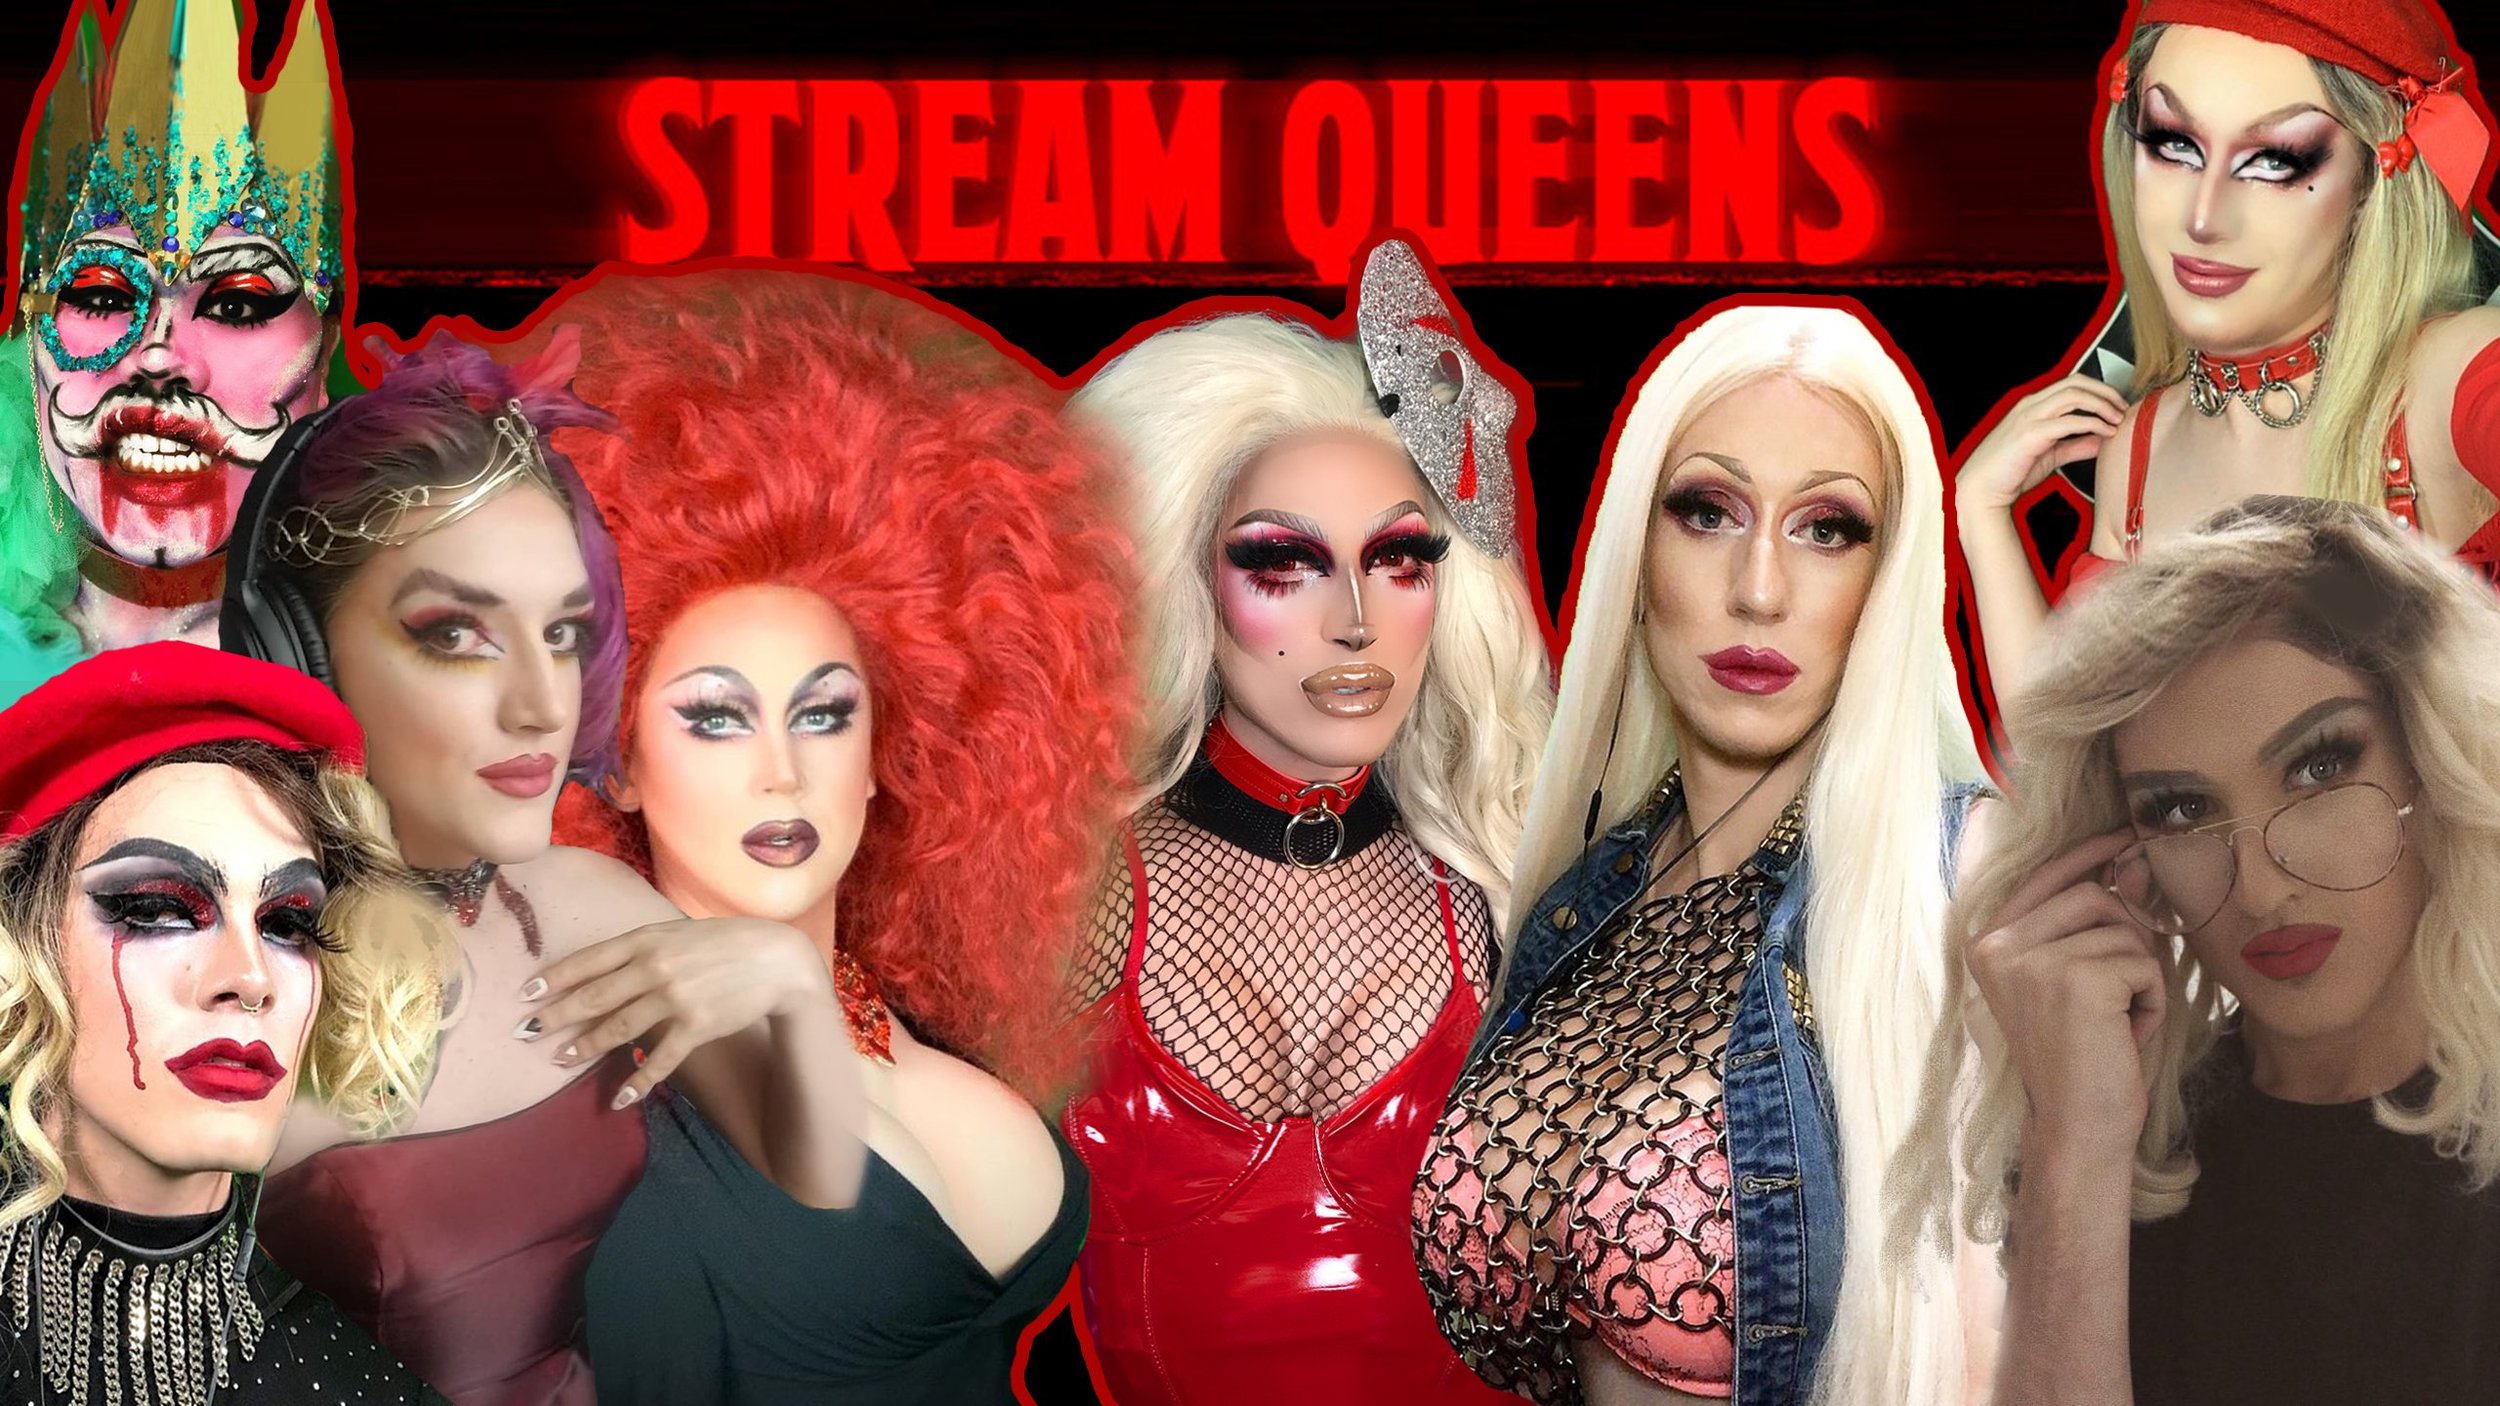 Stream queen